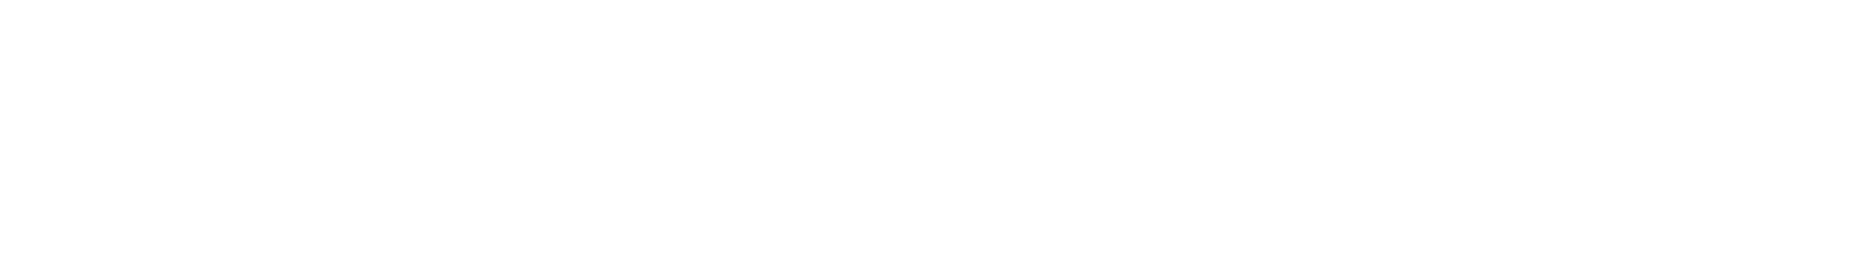 Overdrive Logo - Developer Portal - OverDrive Logos